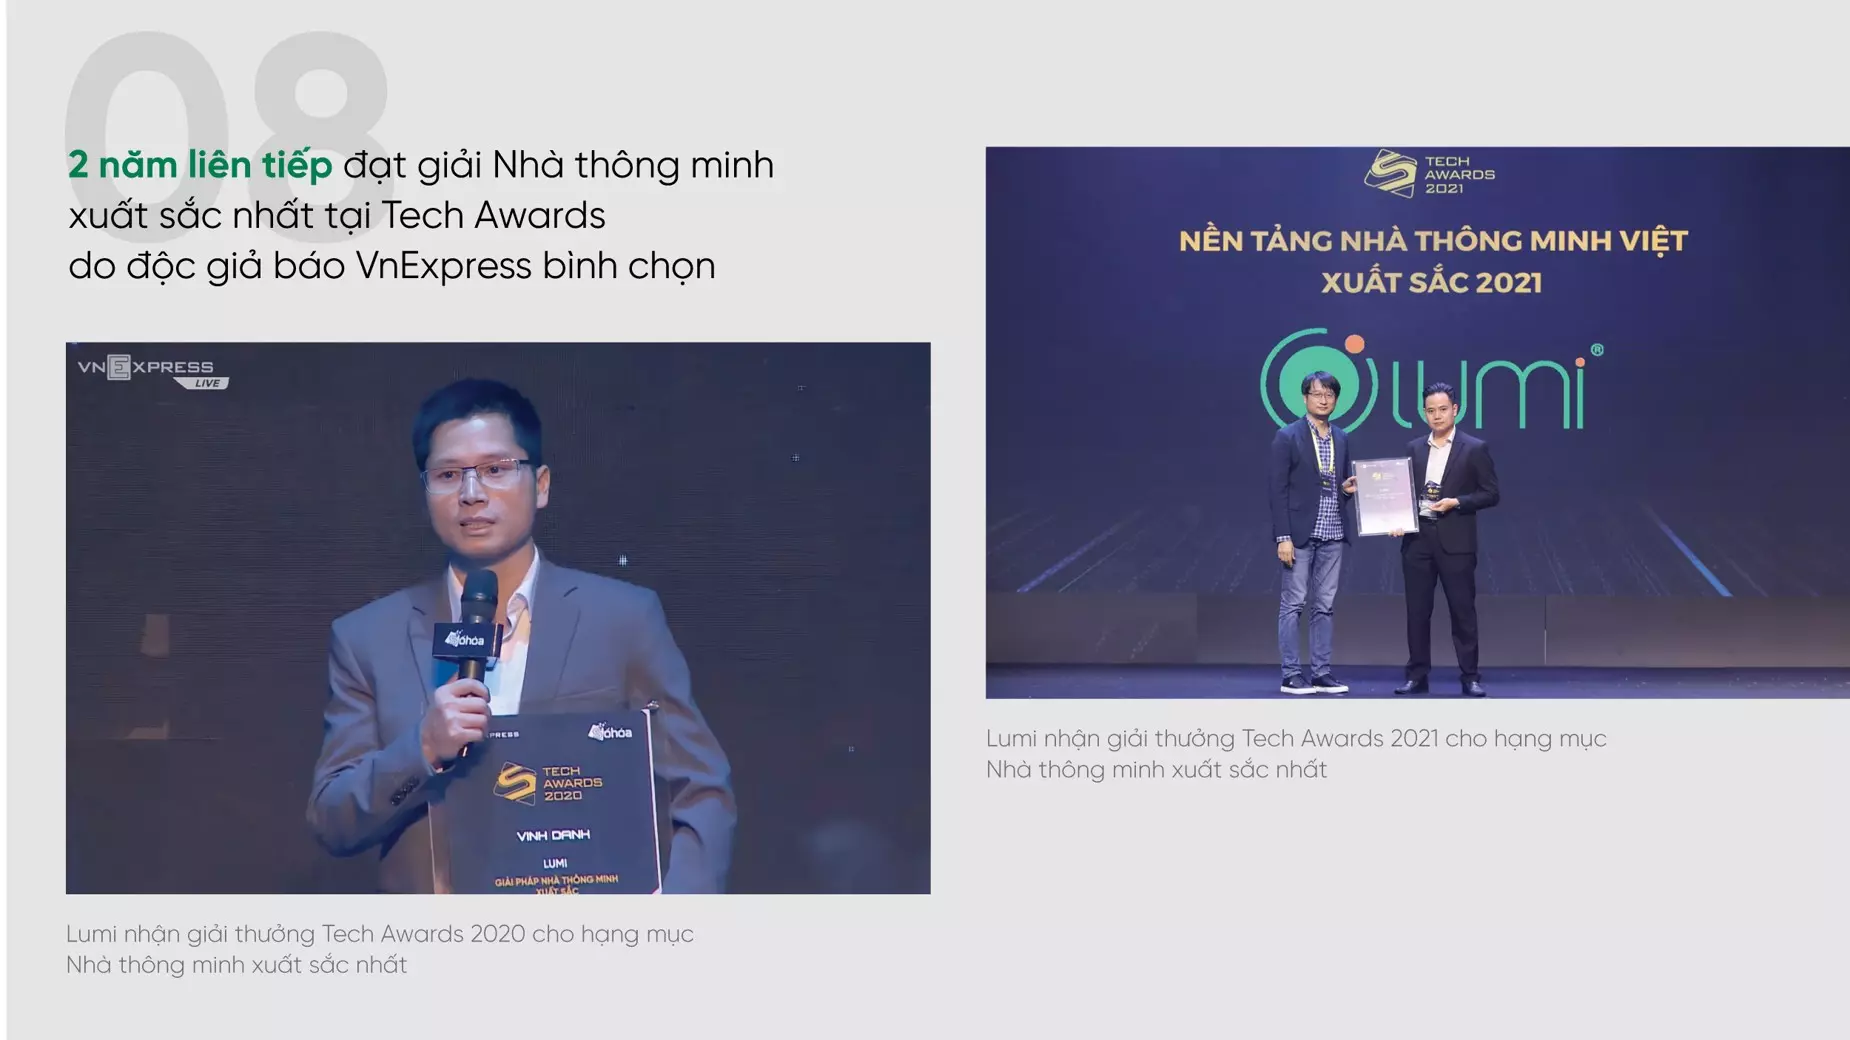 Lumi đạt danh hiệu nhà thông minh Việt xuất sắc 2 năm liên tiếp